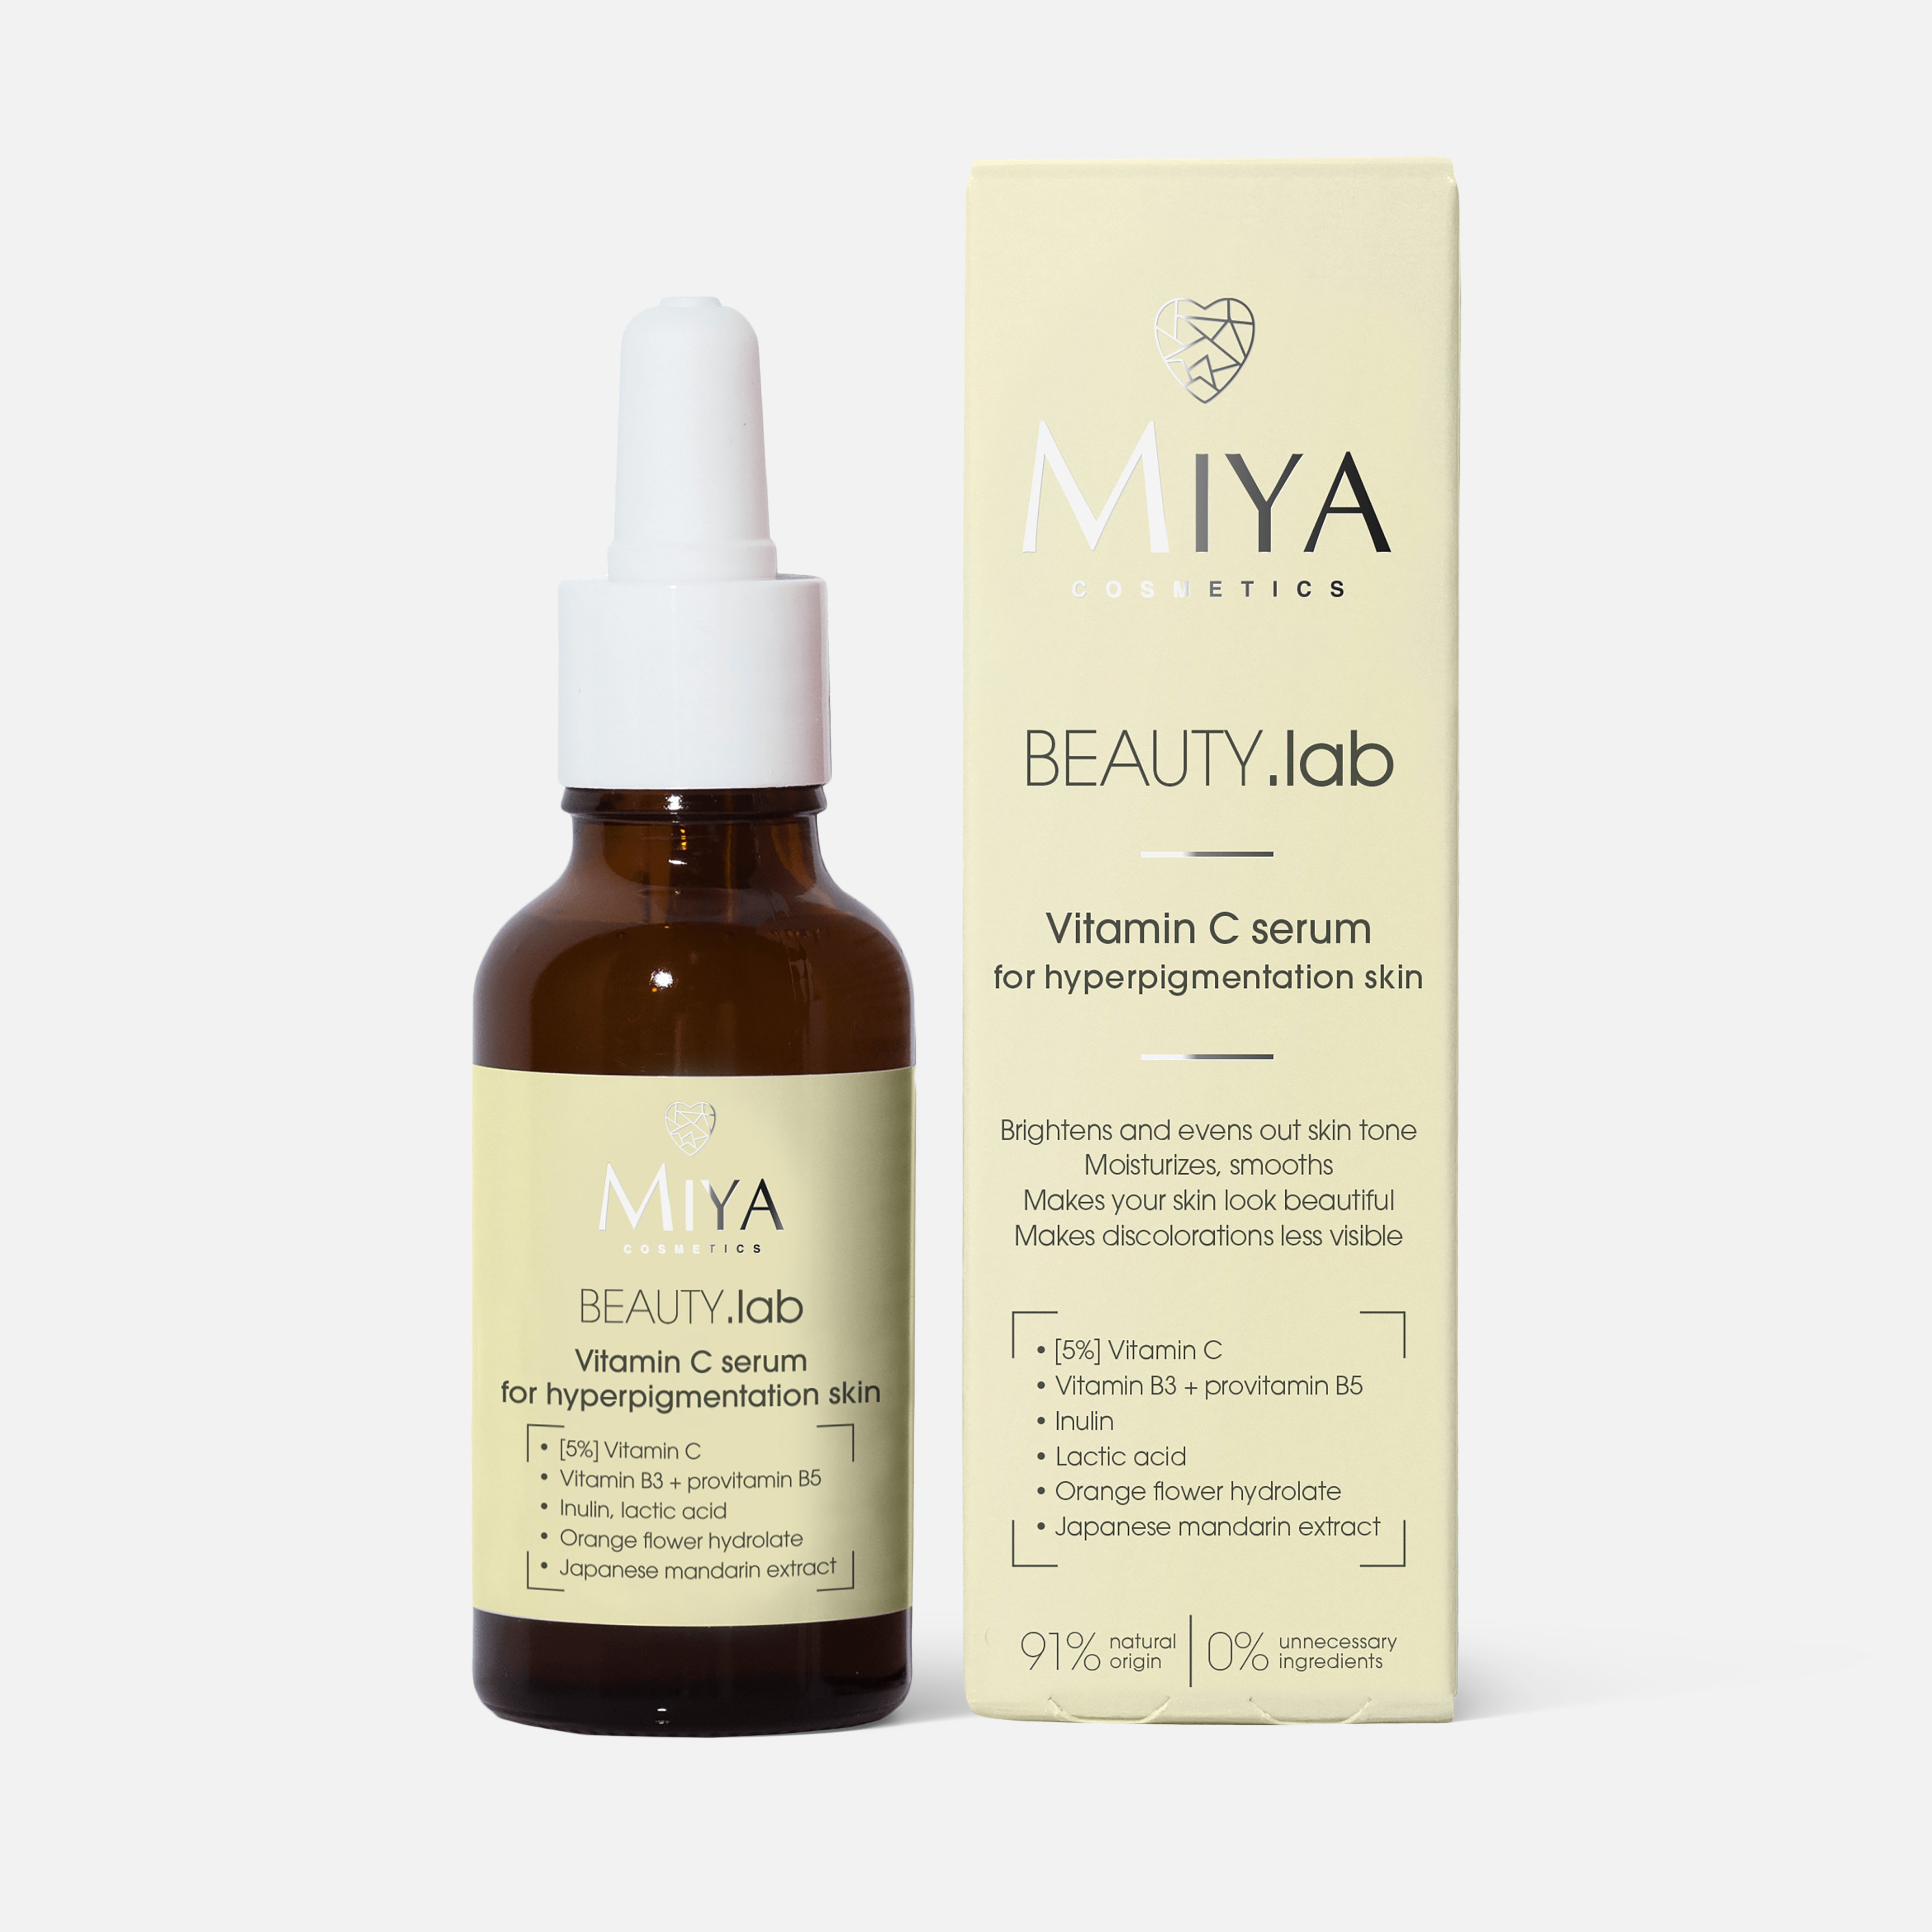 Сыворотка для лица Miya cosmetics Beauty.Lab for hyperpigmentation skin Vitamin C, 30 мл asiakiss сыворотка для лица шеи и области декольте со змеиным пептидом 8